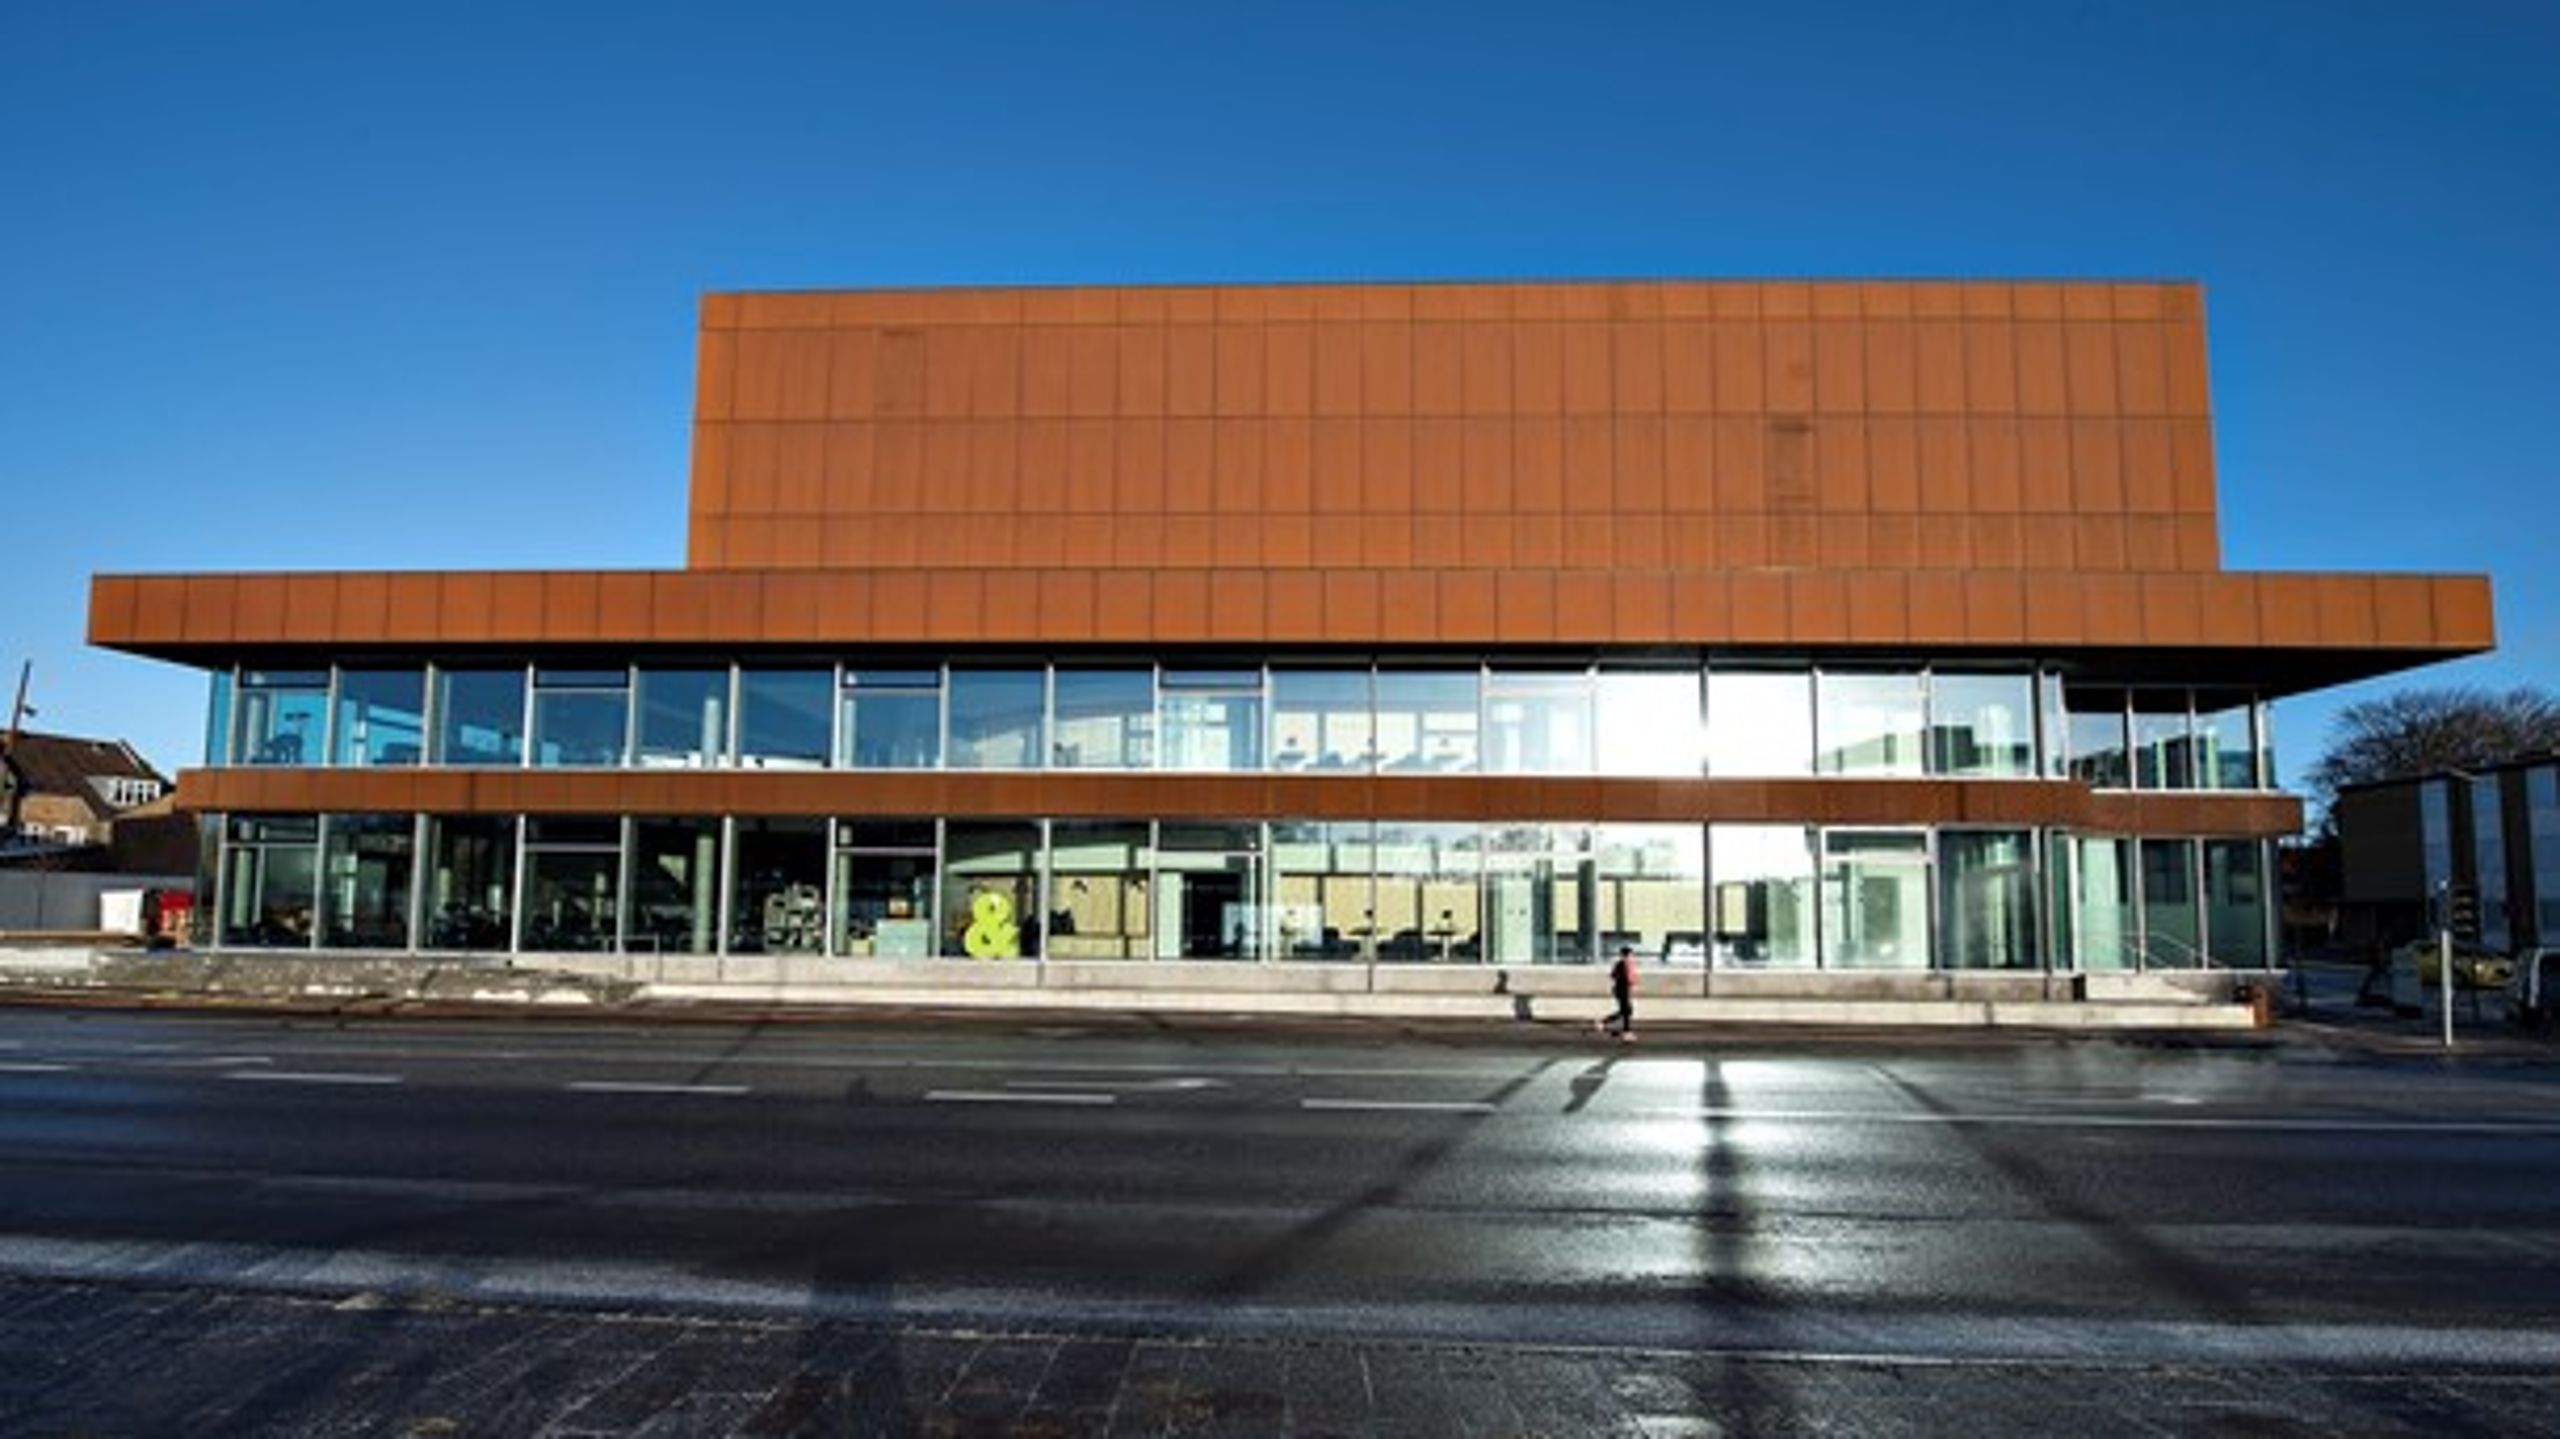 Regeringen foreslår at øremærke 9 millioner kroner til tre jyske teatre, heriblandt Vendsyssel Teater.